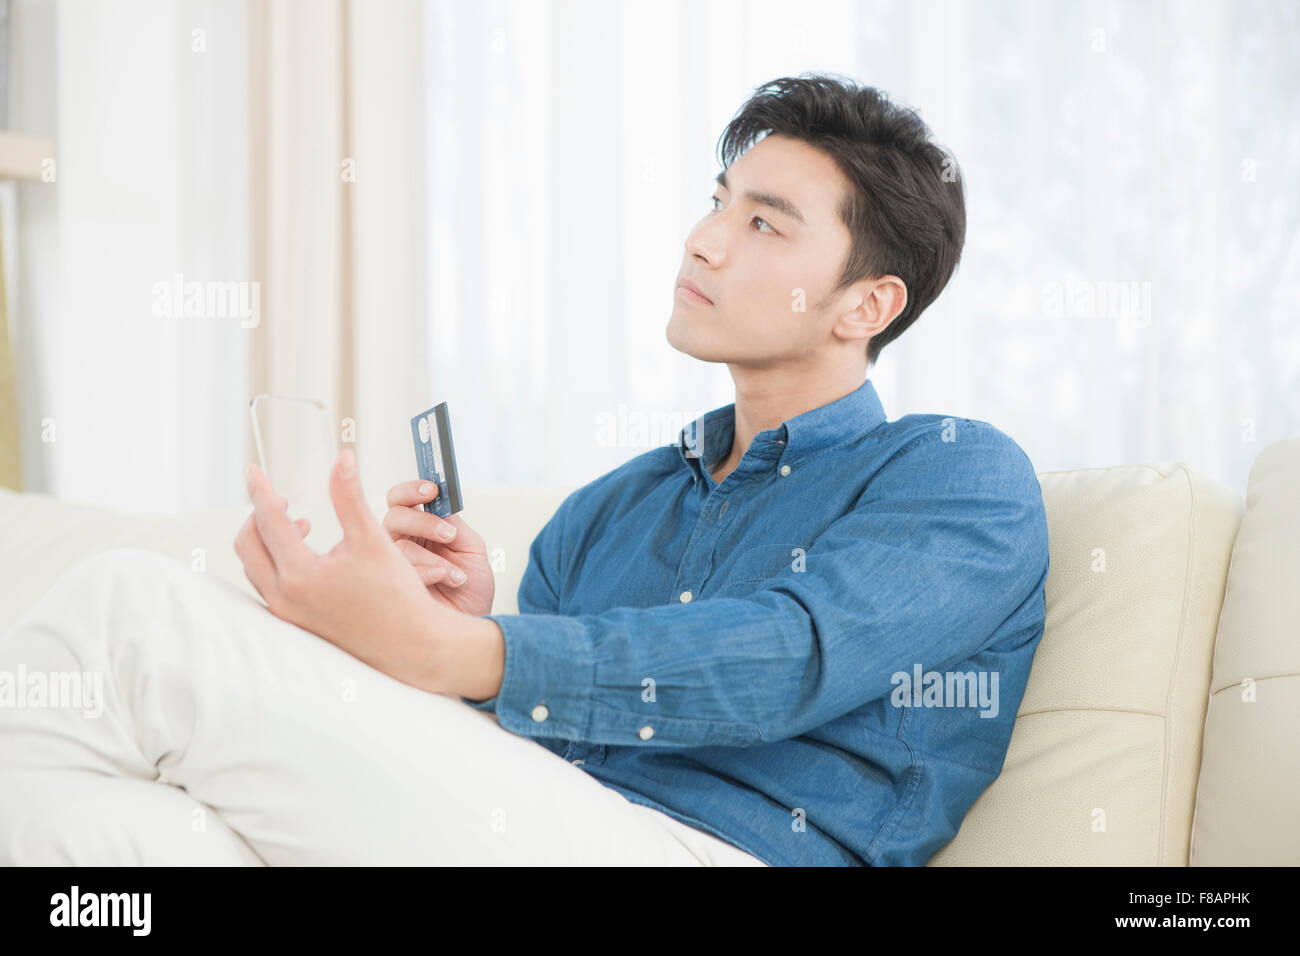 Vue latérale du jeune homme tenant une carte de crédit et un smartphone transparent jusqu'à la sur canapé Banque D'Images